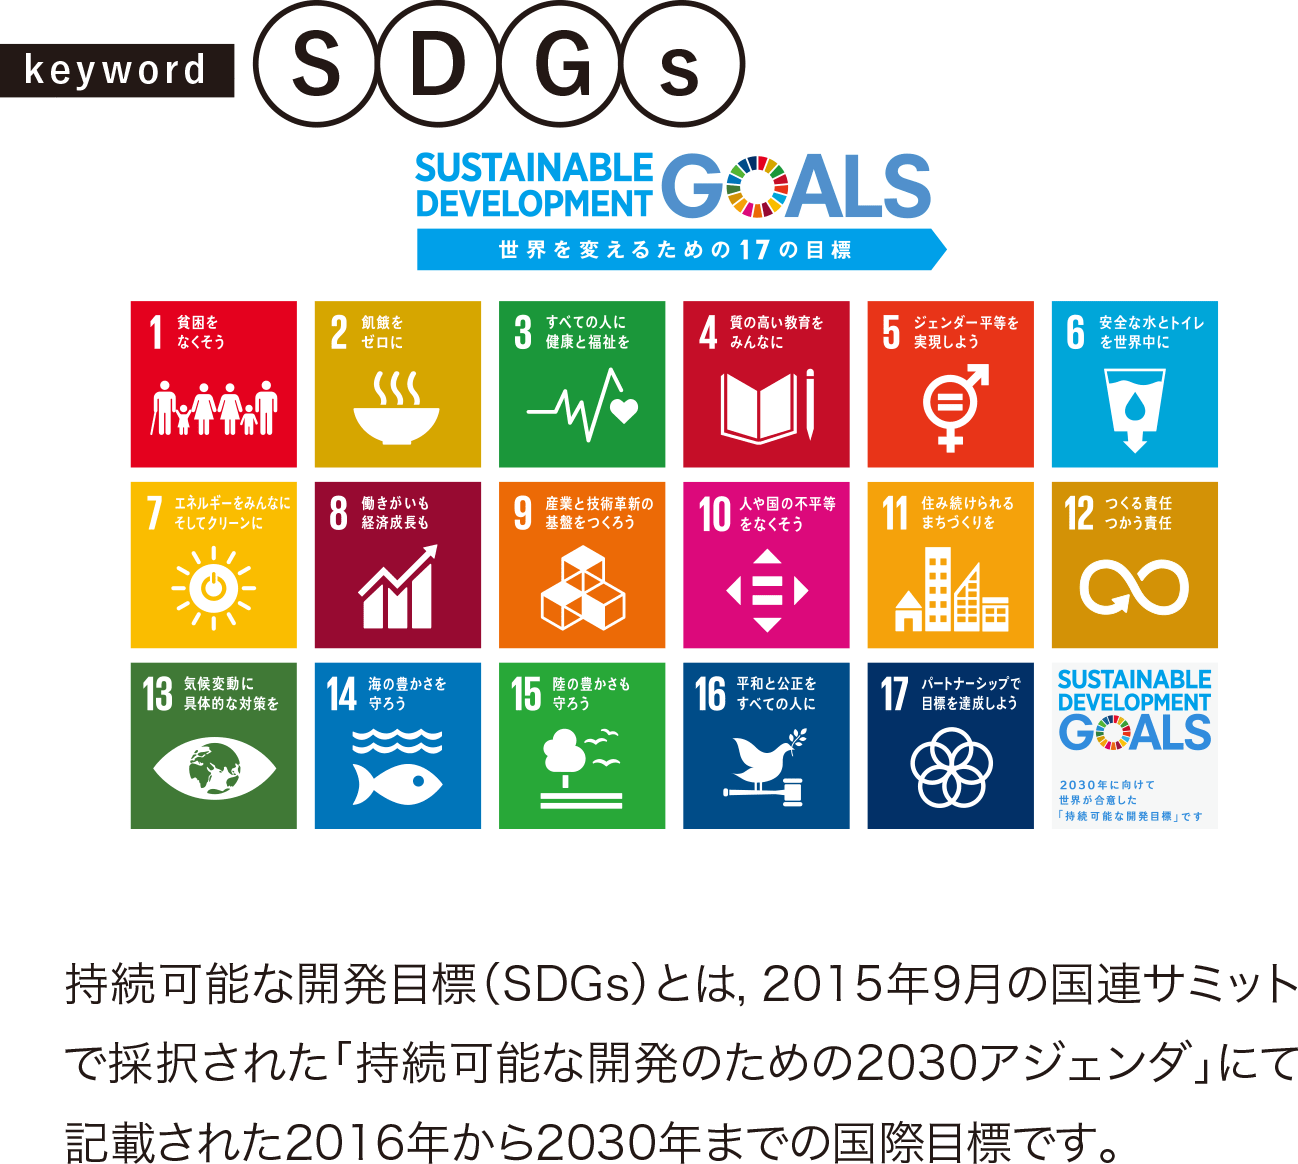 持続可能な開発目標（SDGs）とは，2015年9月の国連サミットで採択された「持続可能な開発のための2030アジェンダ」にて記載された2016年から2030年までの国際目標です。